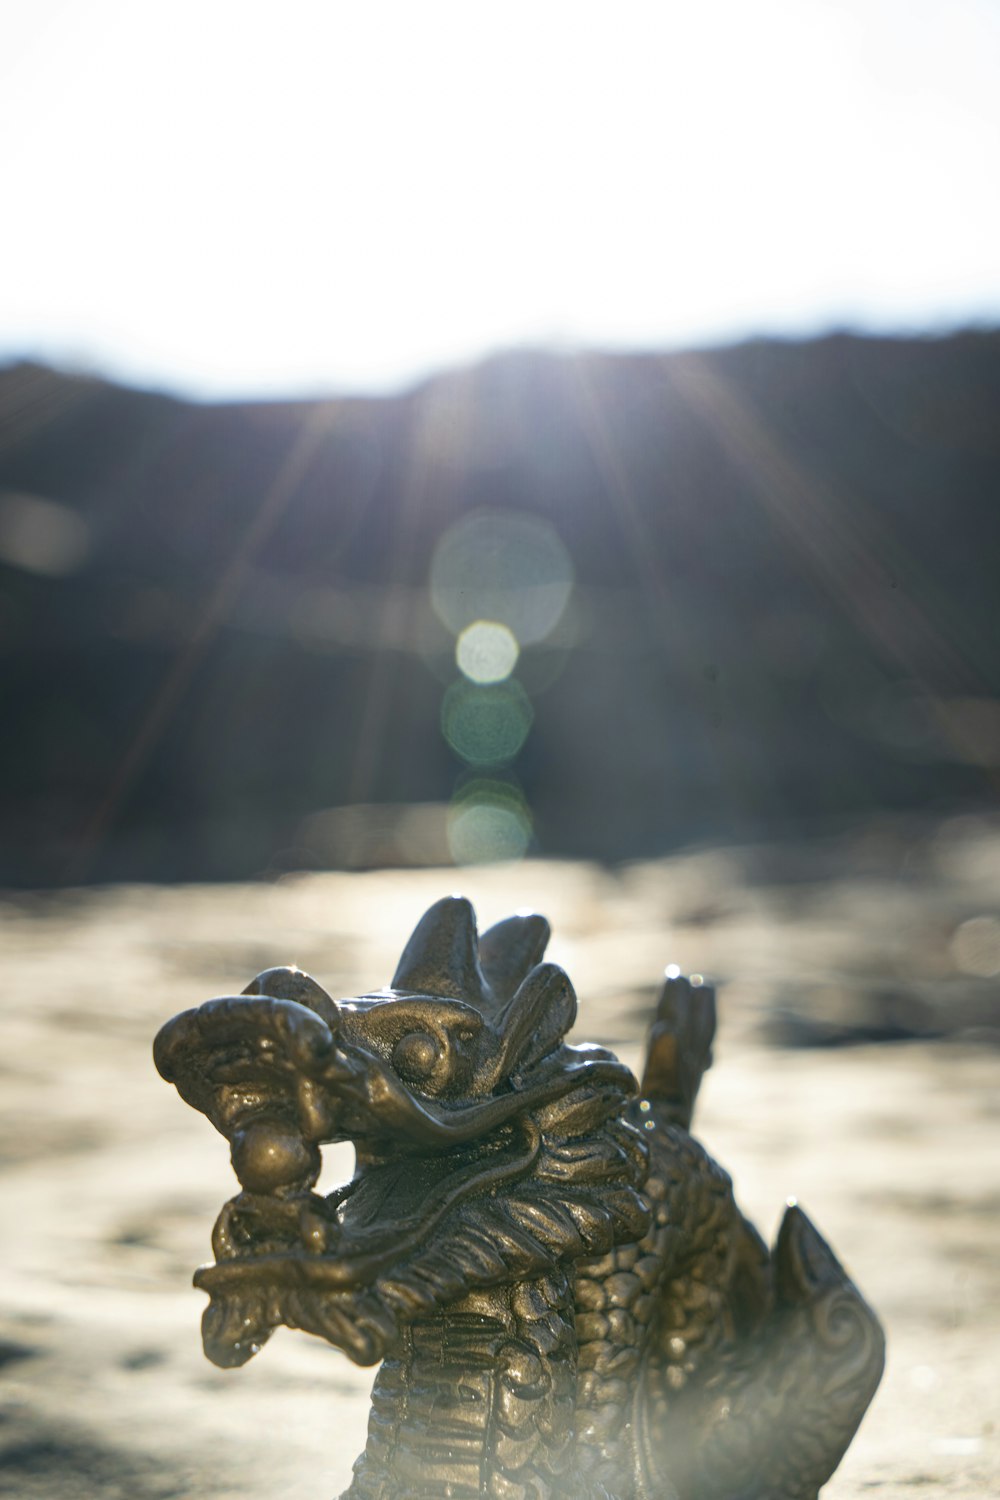 gold-colored dragon figurine